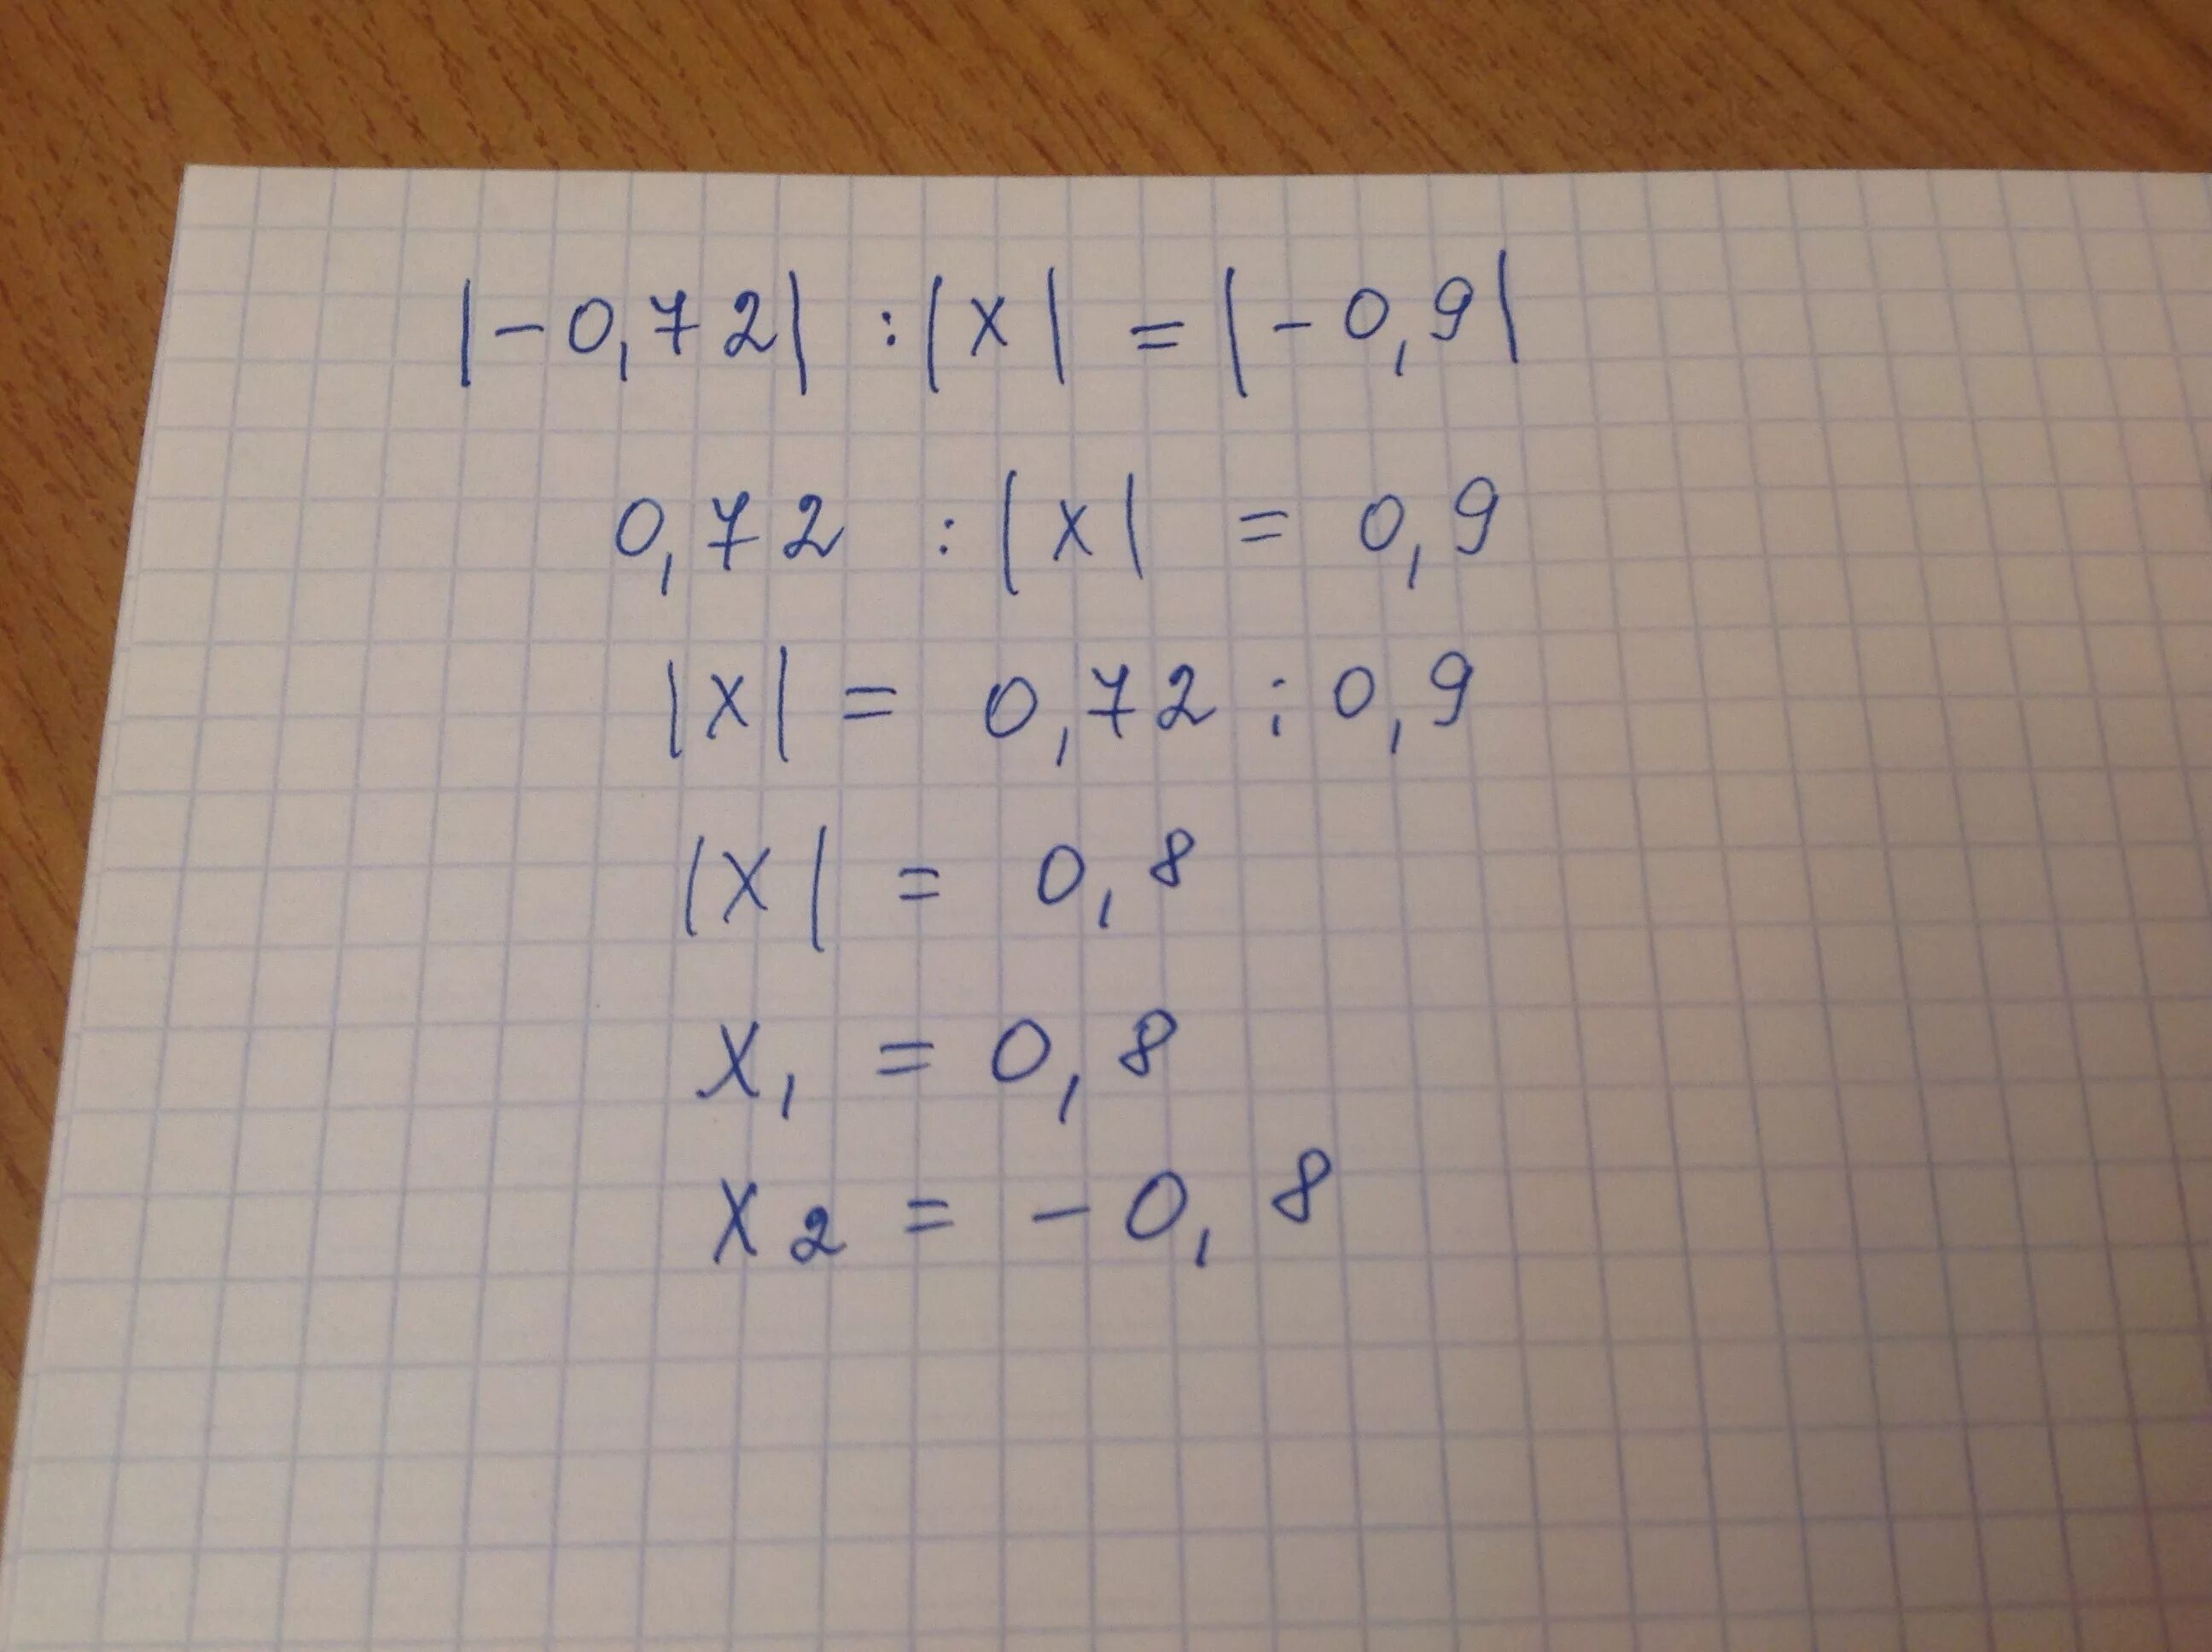 X 0 72 1. Найдите два корня уравнения. Корни уравнения 0х=0. Найдите два корня уравнения у -0.9 -0.72. 0 * Х =-72.